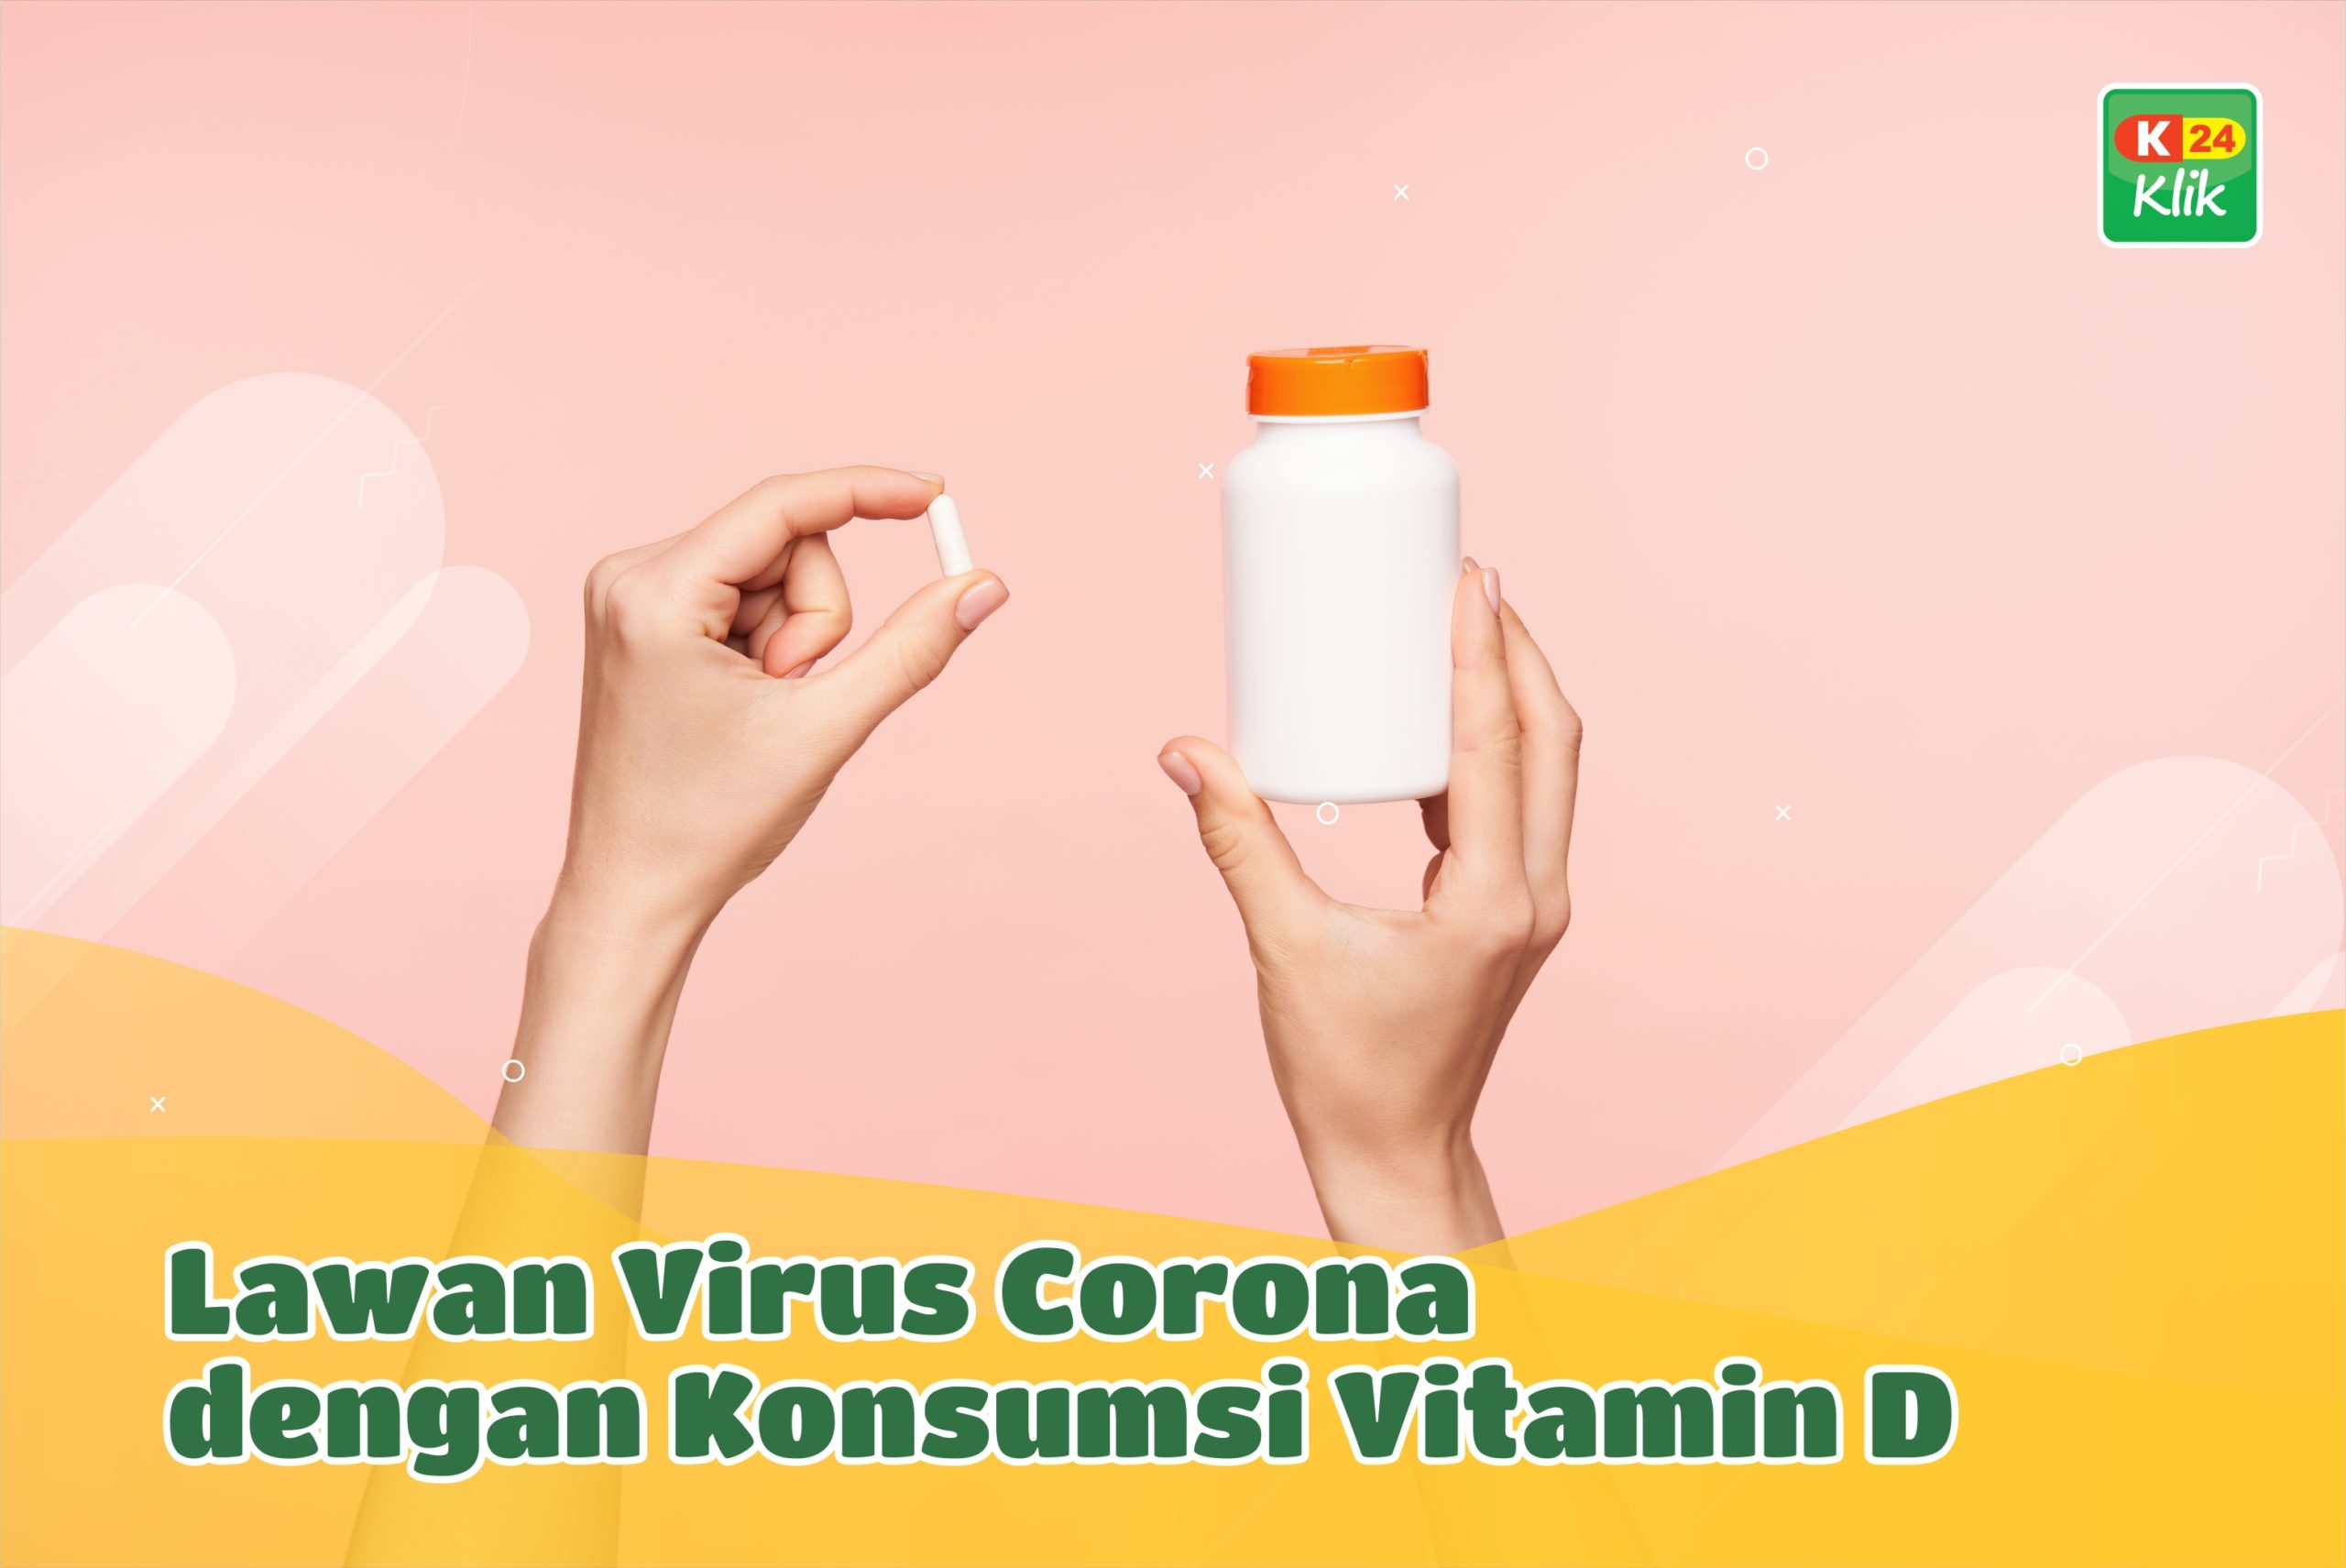 k24klik-vitamin-d-untuk-melawan-virus-corona